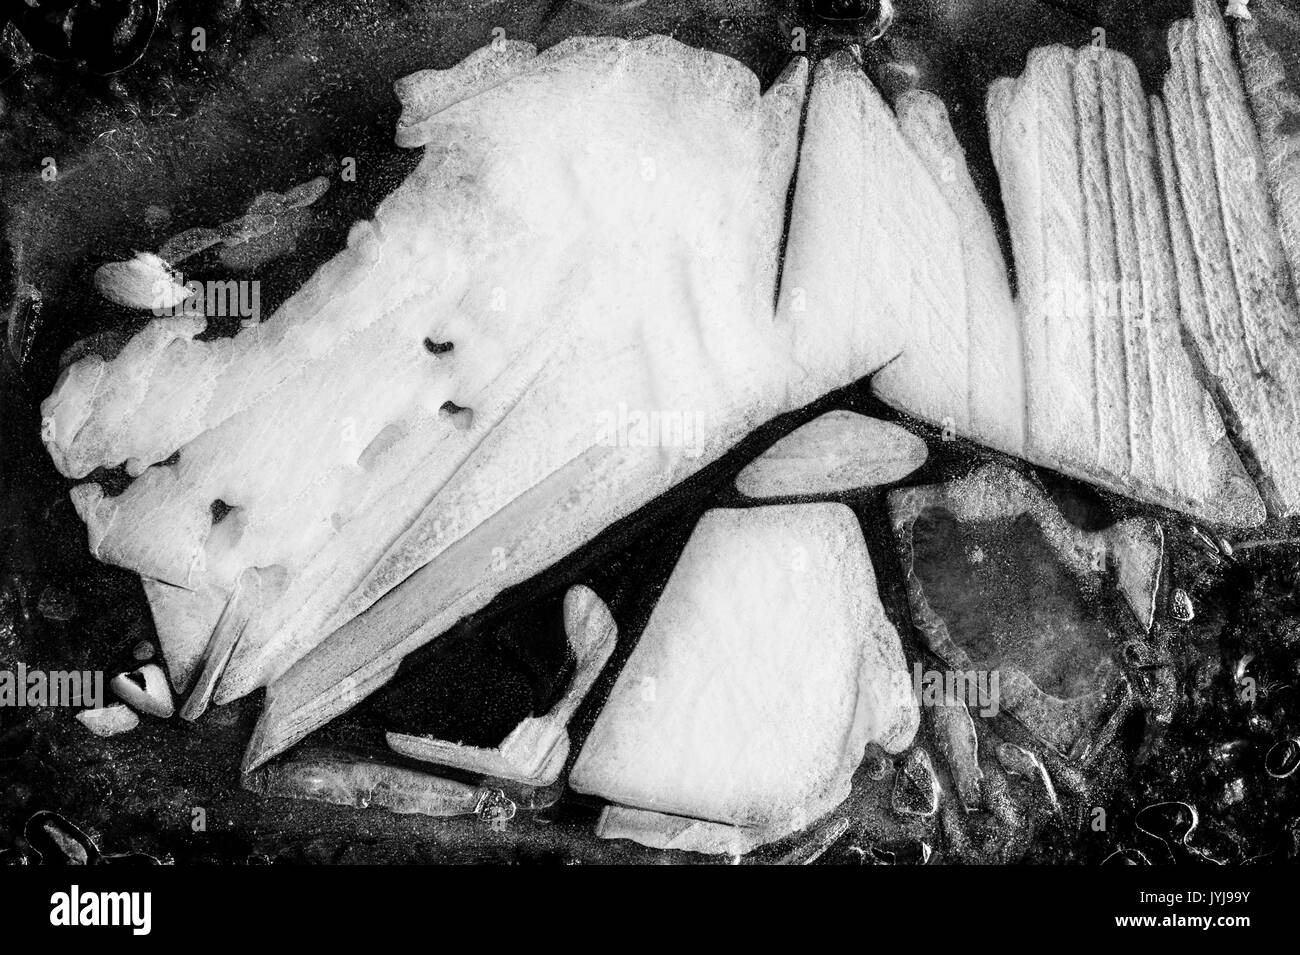 Pozzanghere congelate, fogli di modelli per la preparazione del ghiaccio, immagini astratte e disegni della natura Foto Stock